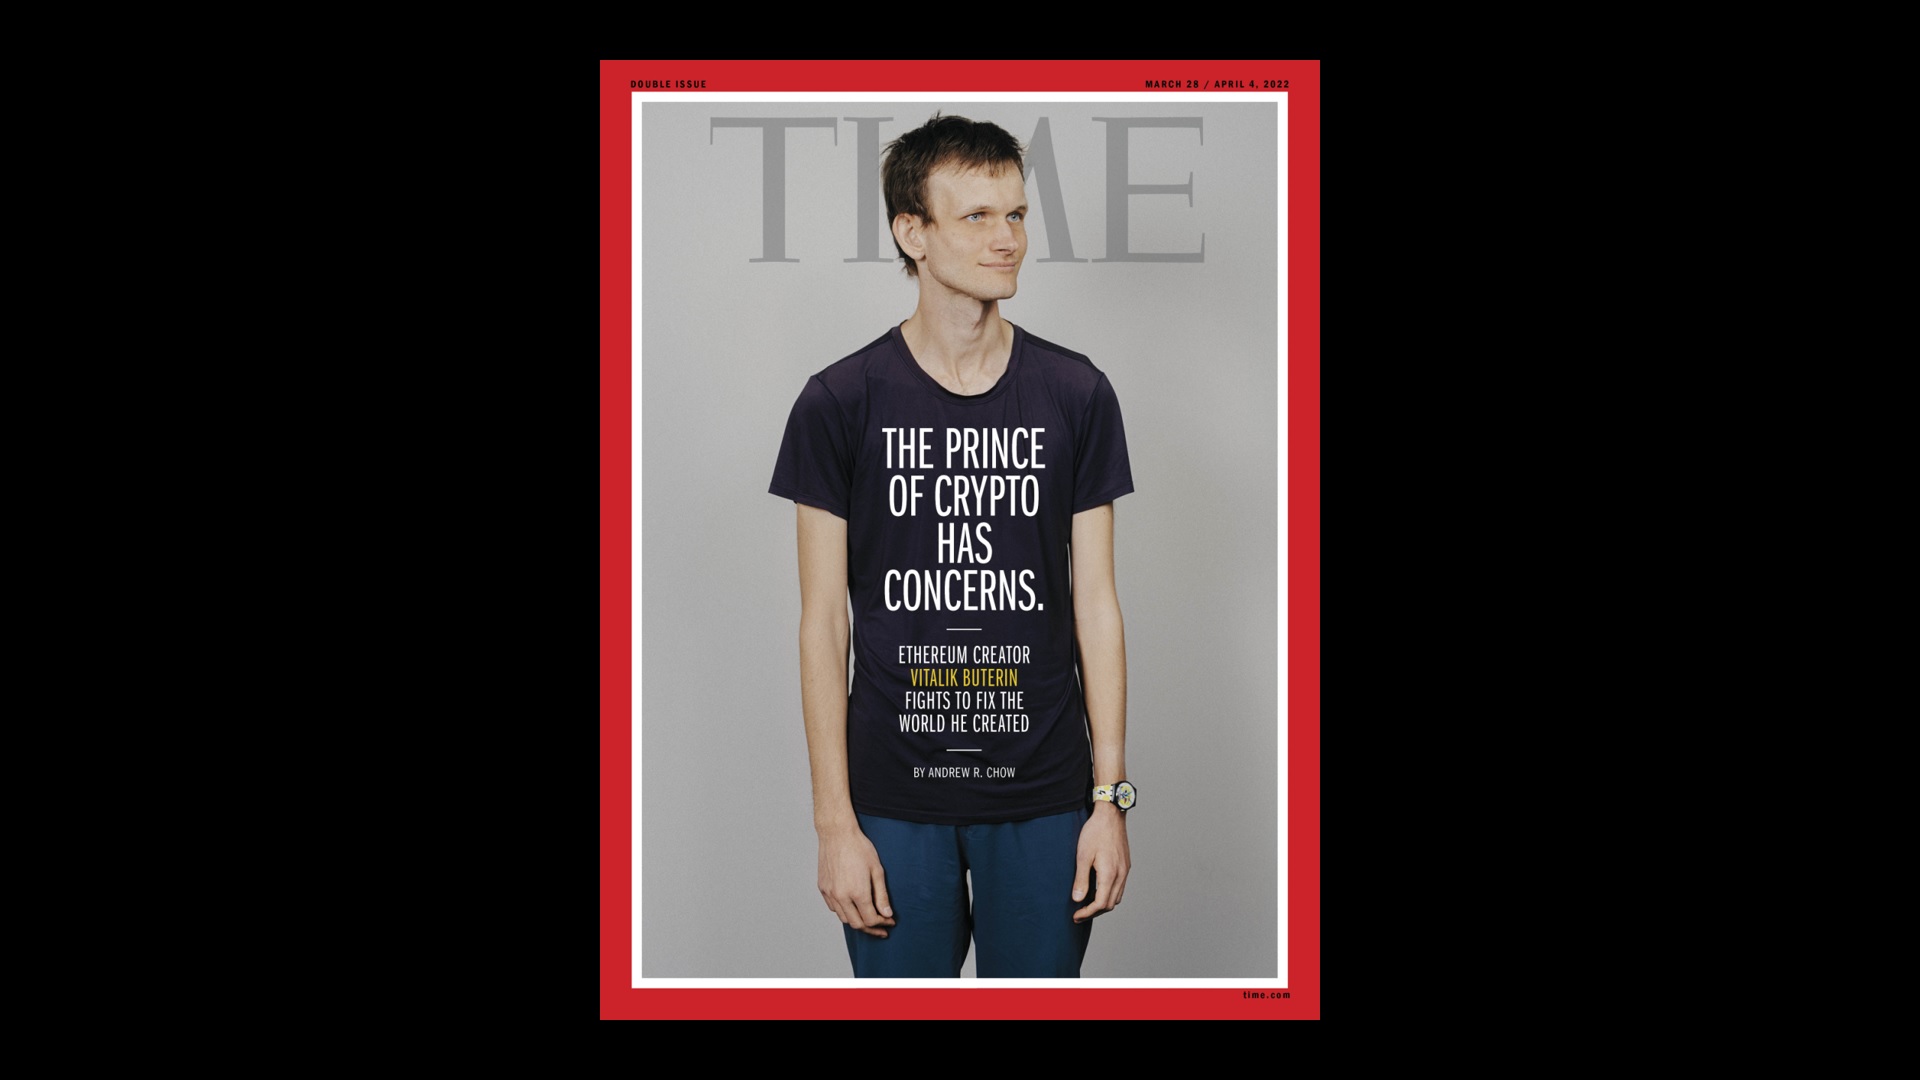 Ẩn phẩm Tạp chí TIME có Vitalik Buterin trên trang bìa được phát hành dưới dạng NFT